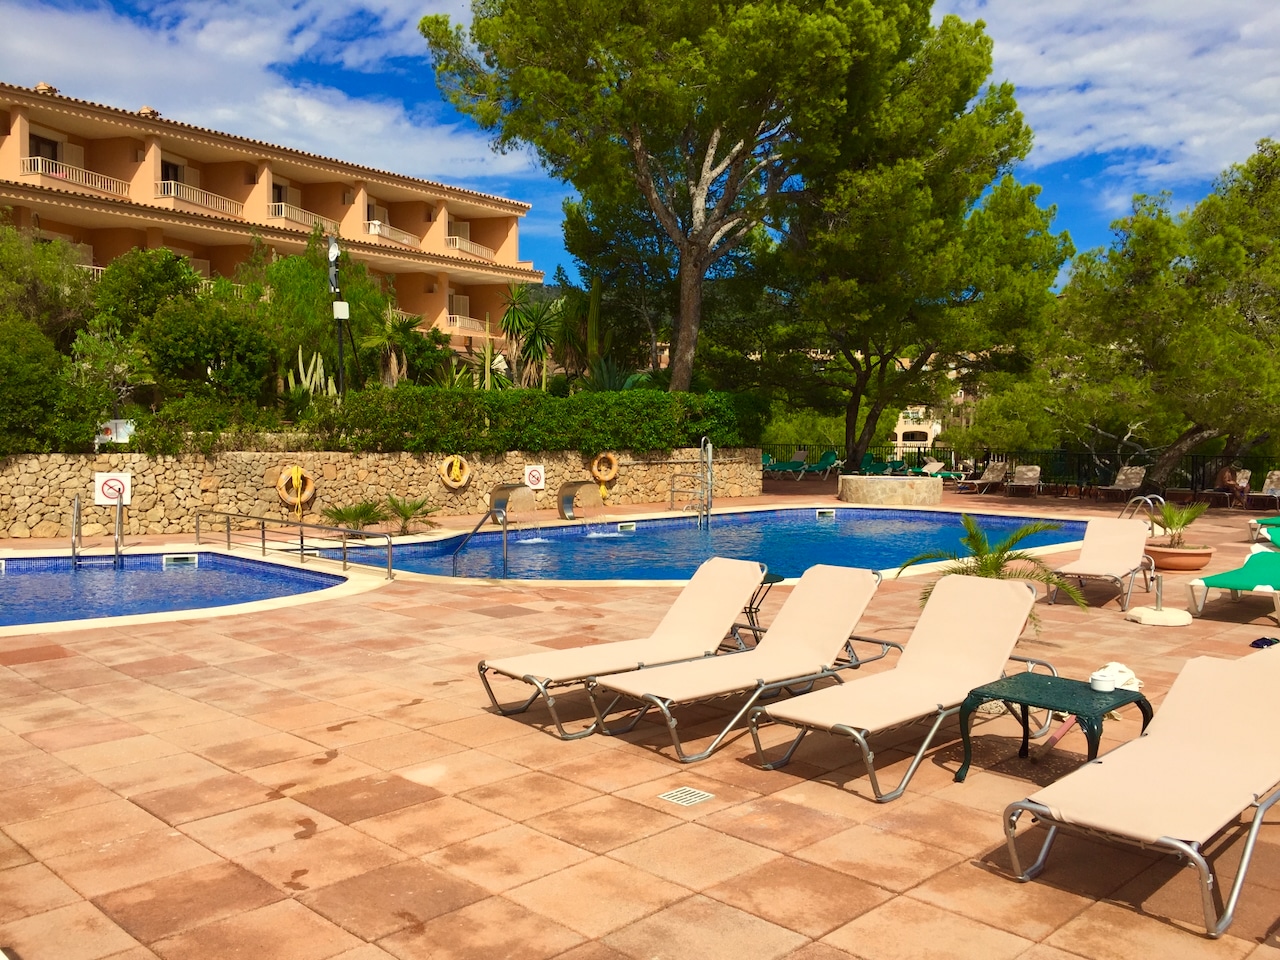 Hotel Cala Fornells Mallorca – Erfahrungen & Bewertungen Das Hotel verfügt über einen großen Pool auf dem Dach mit Panoramablick auf die Bucht. Man kann sich kaum entscheiden, ob man unten am Strand liegen soll oder lieber oben am Pool – beides ist einfach herrlich. Der Pool ist der perfekte Ort, um in deinem Mallorca-Urlaub zu entspannen und die Sonne zu genießen. An regnerischen Tagen kannst du auch den Indoor-Pool im Wellness-Bereich nutzen.